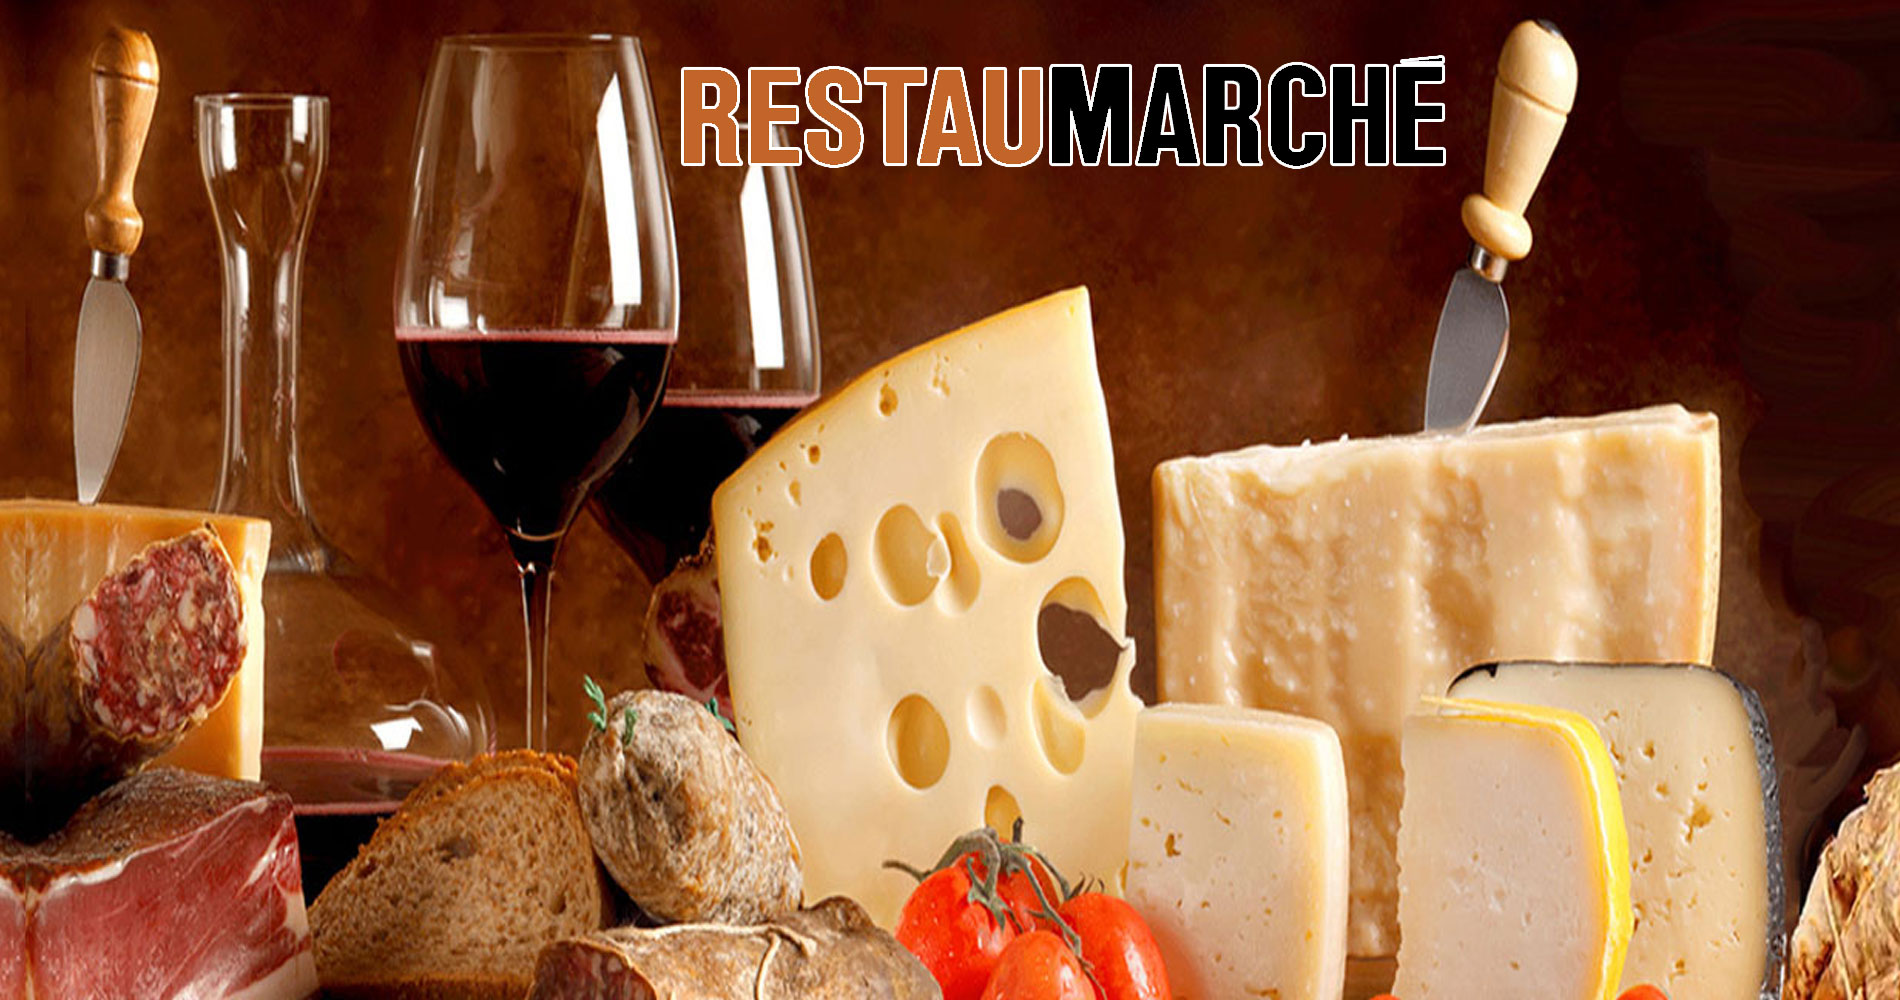 les restaurants de cuisine franaise RestauMarch